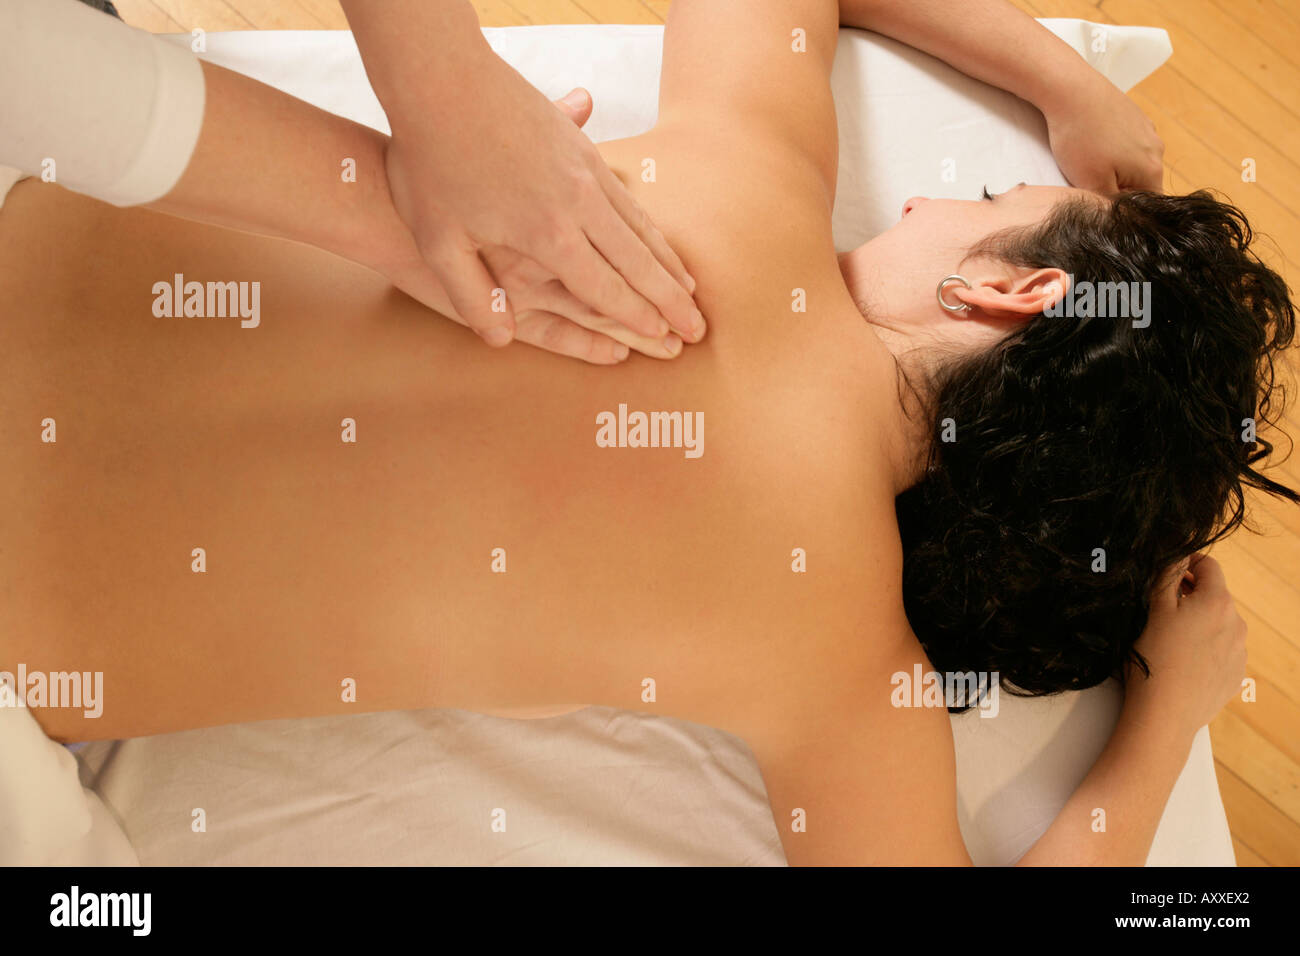 Masaje femenino. Masaje de manos hembras desde atrás para aliviar el estrés y la tensión. Foto de stock